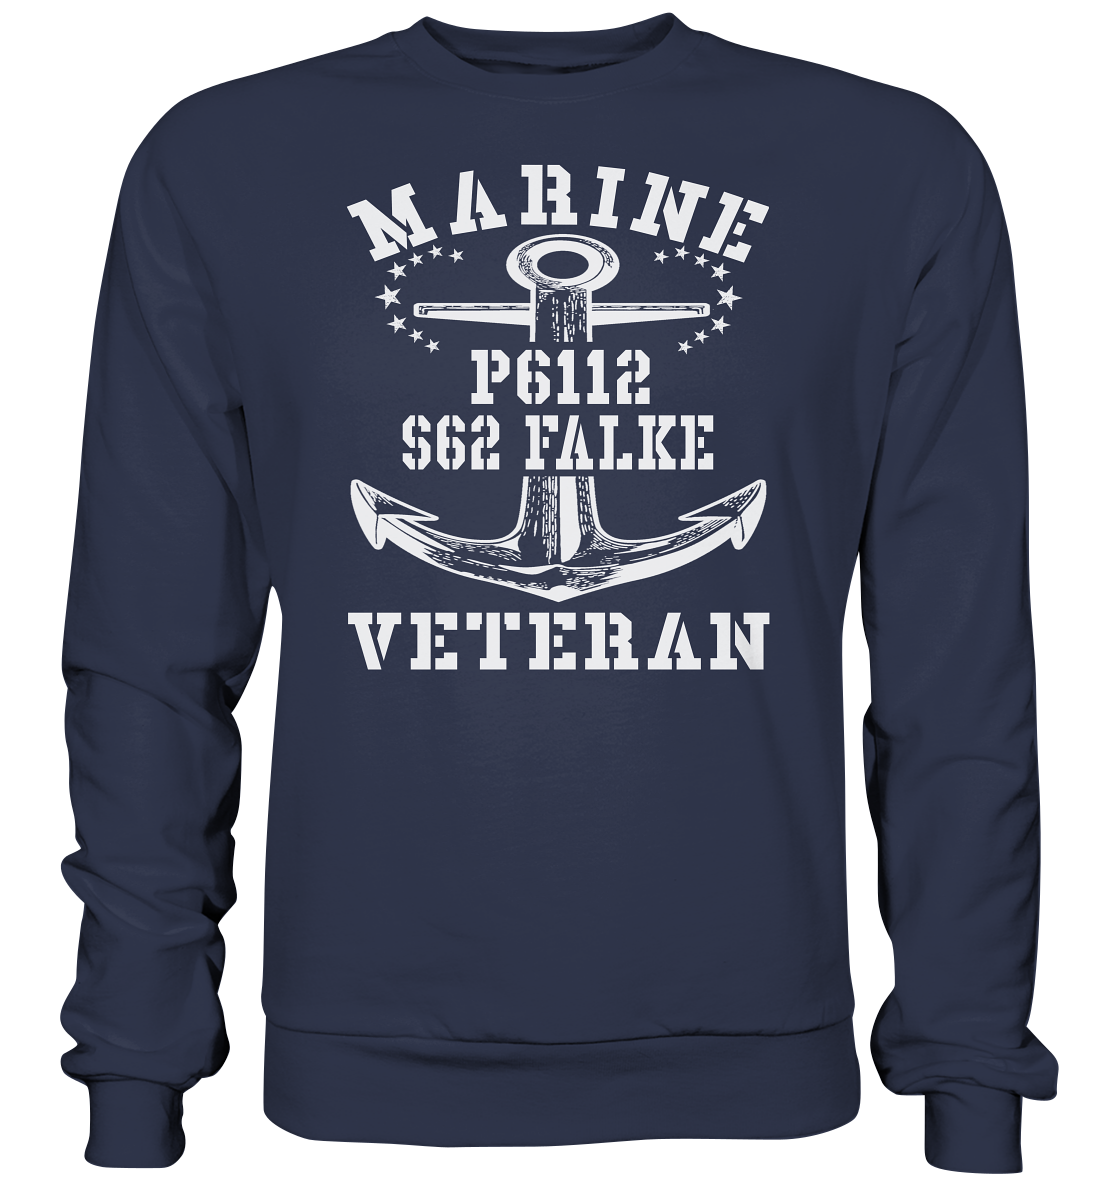 FK-Schnellboot P6112 FALKE Marine Veteran - Premium Sweatshirt